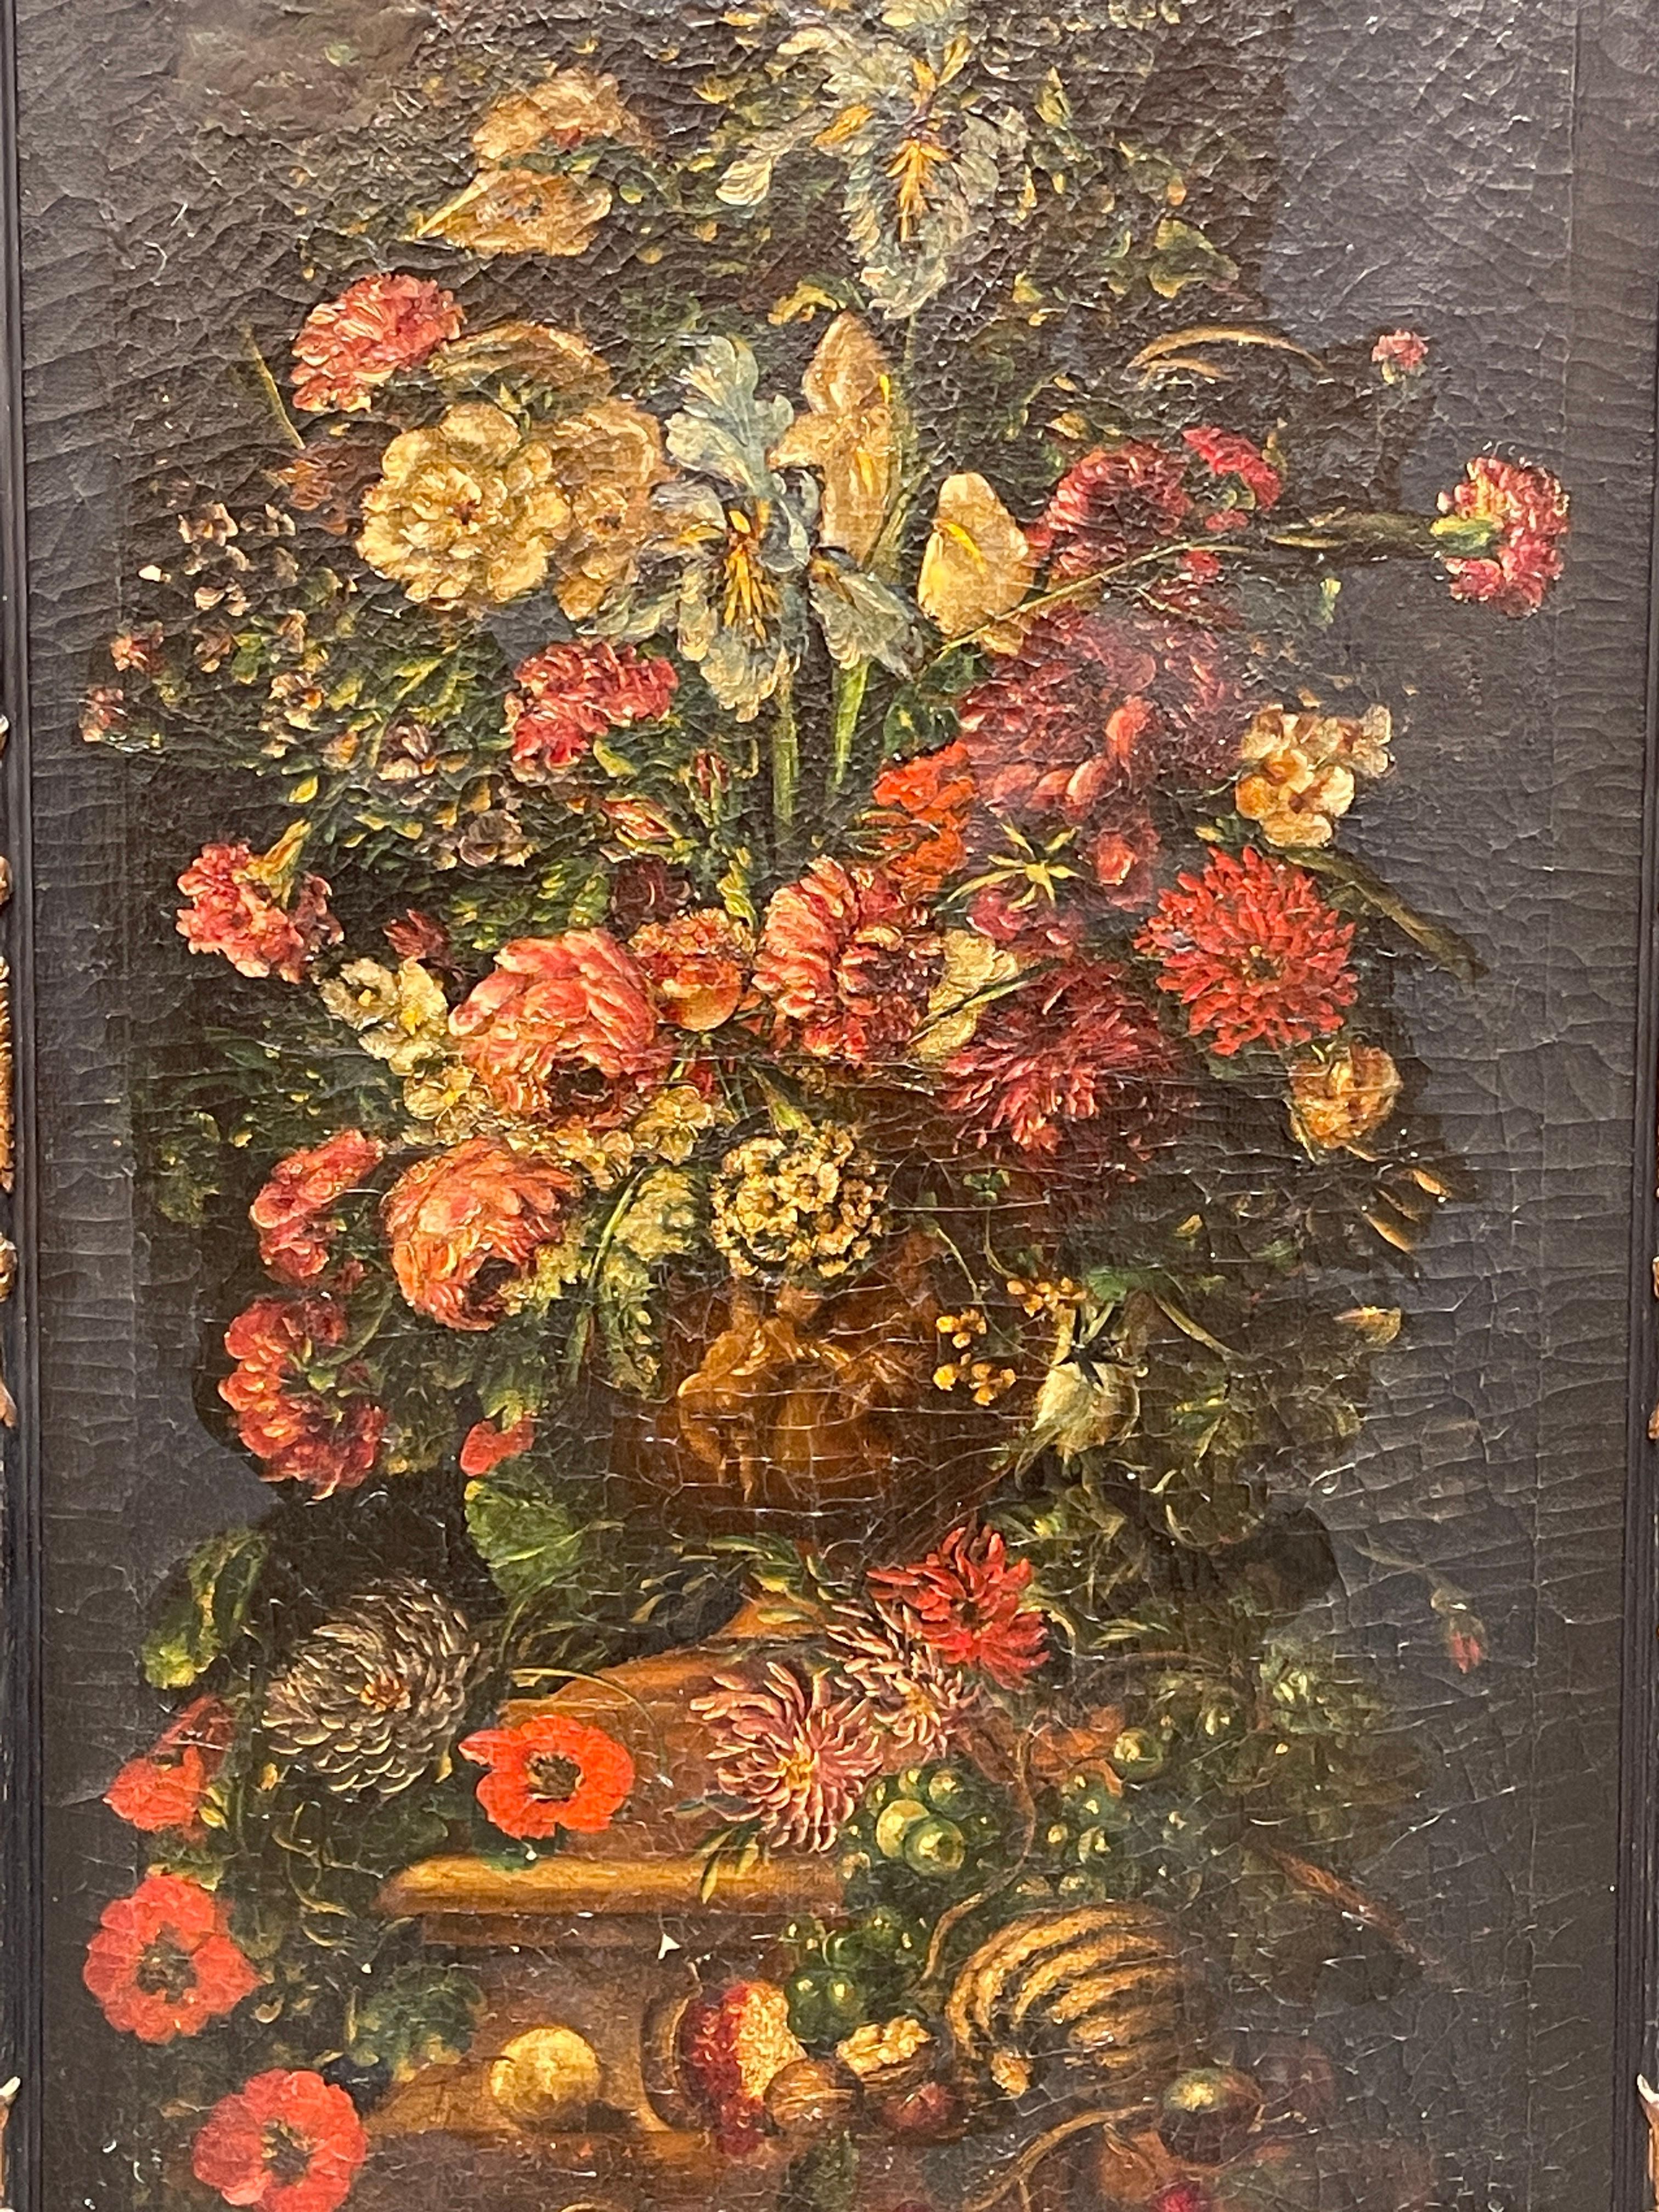 Antikes Gemälde, flämisch, Blumen, Banks nach Van Huysum
Ölgemälde auf Leinwand aus dem 18. Jahrhundert, das eine raffinierte Blumenkomposition darstellt und von einem Nachfolger von Van Huysum, Banks, geschaffen wurde.
Leinwand in gutem Zustand,